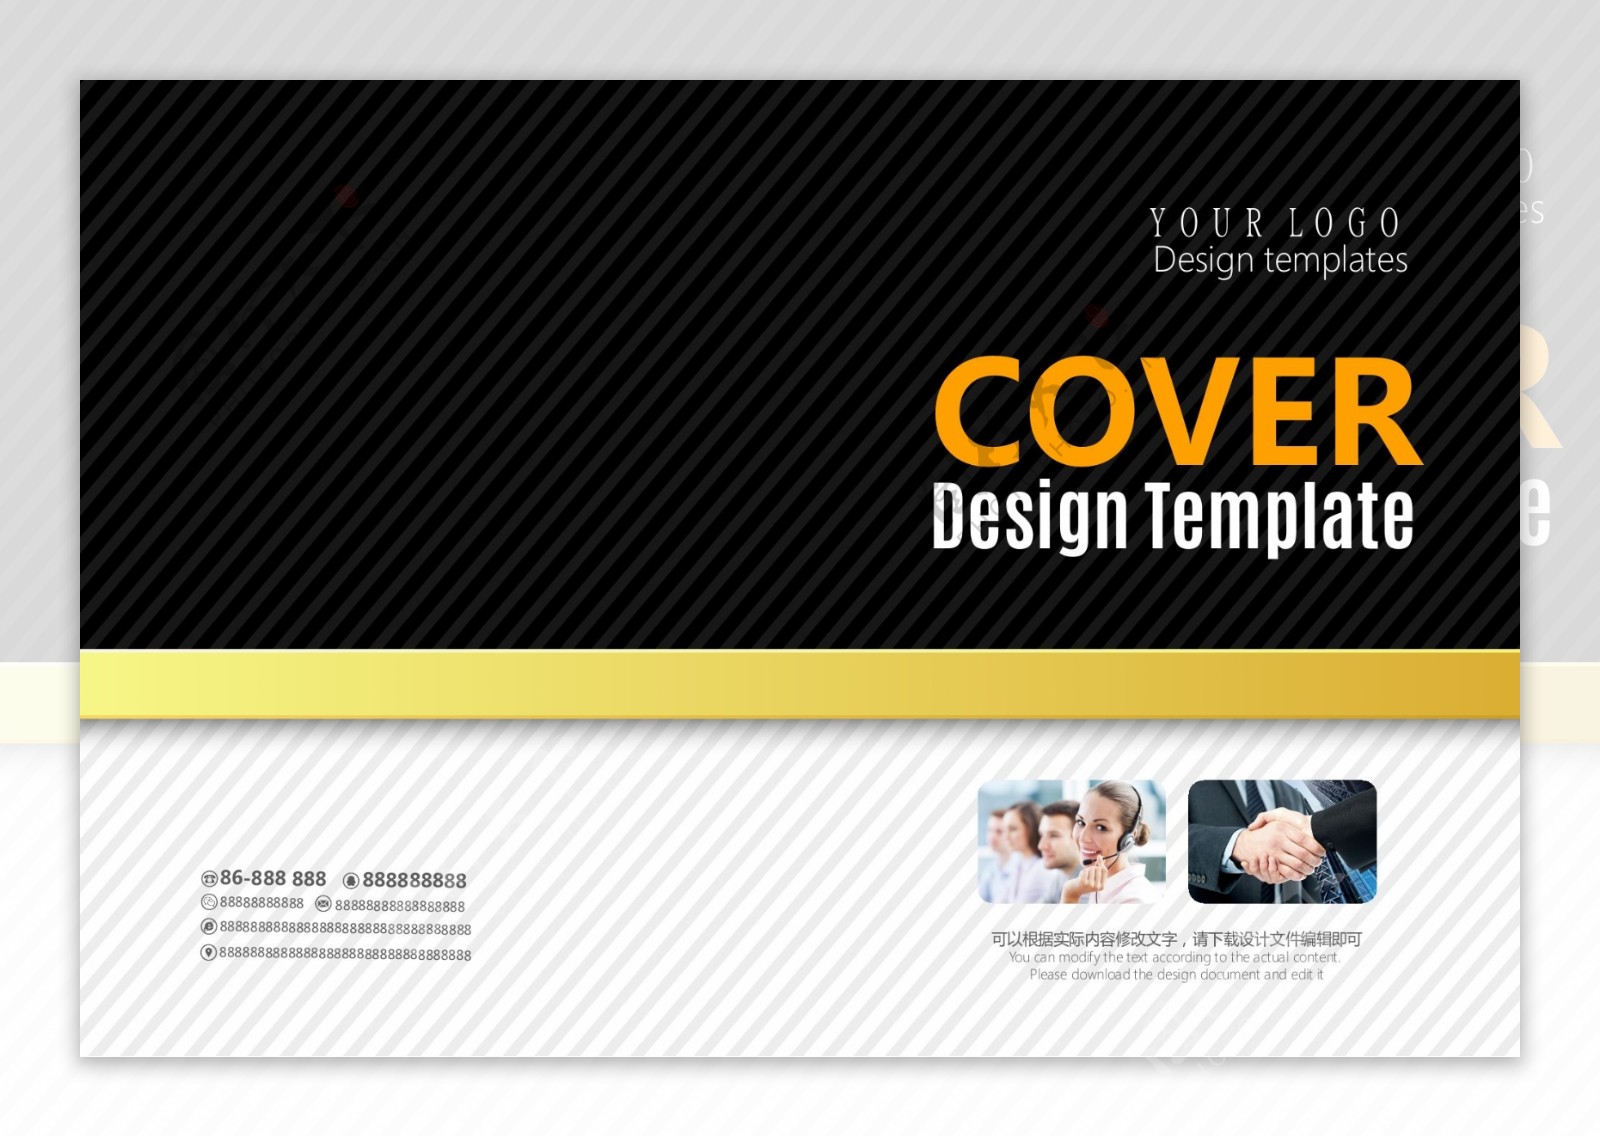 高档黑色简洁企业宣传画册封面设计